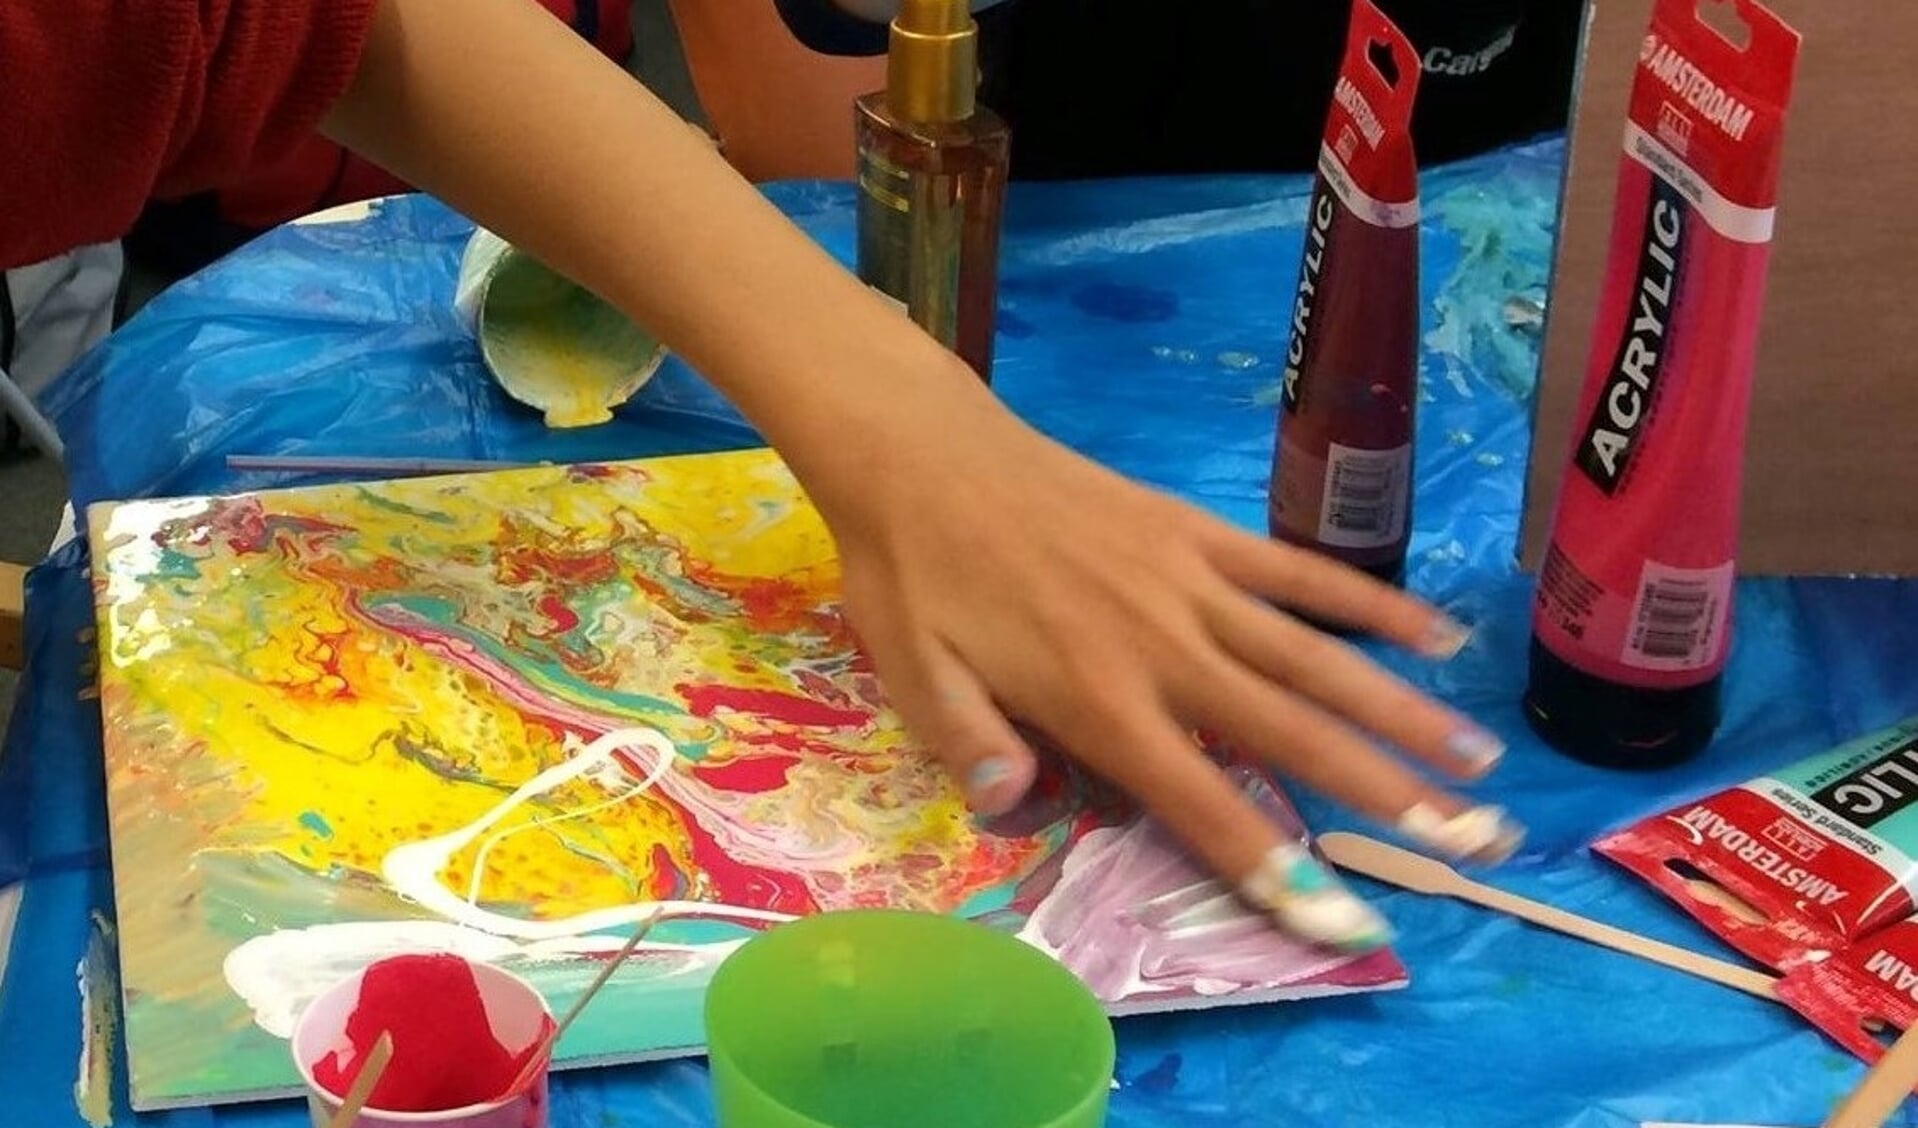 Tieners aan het schilderren in Atelier Kunst aan de Slinger